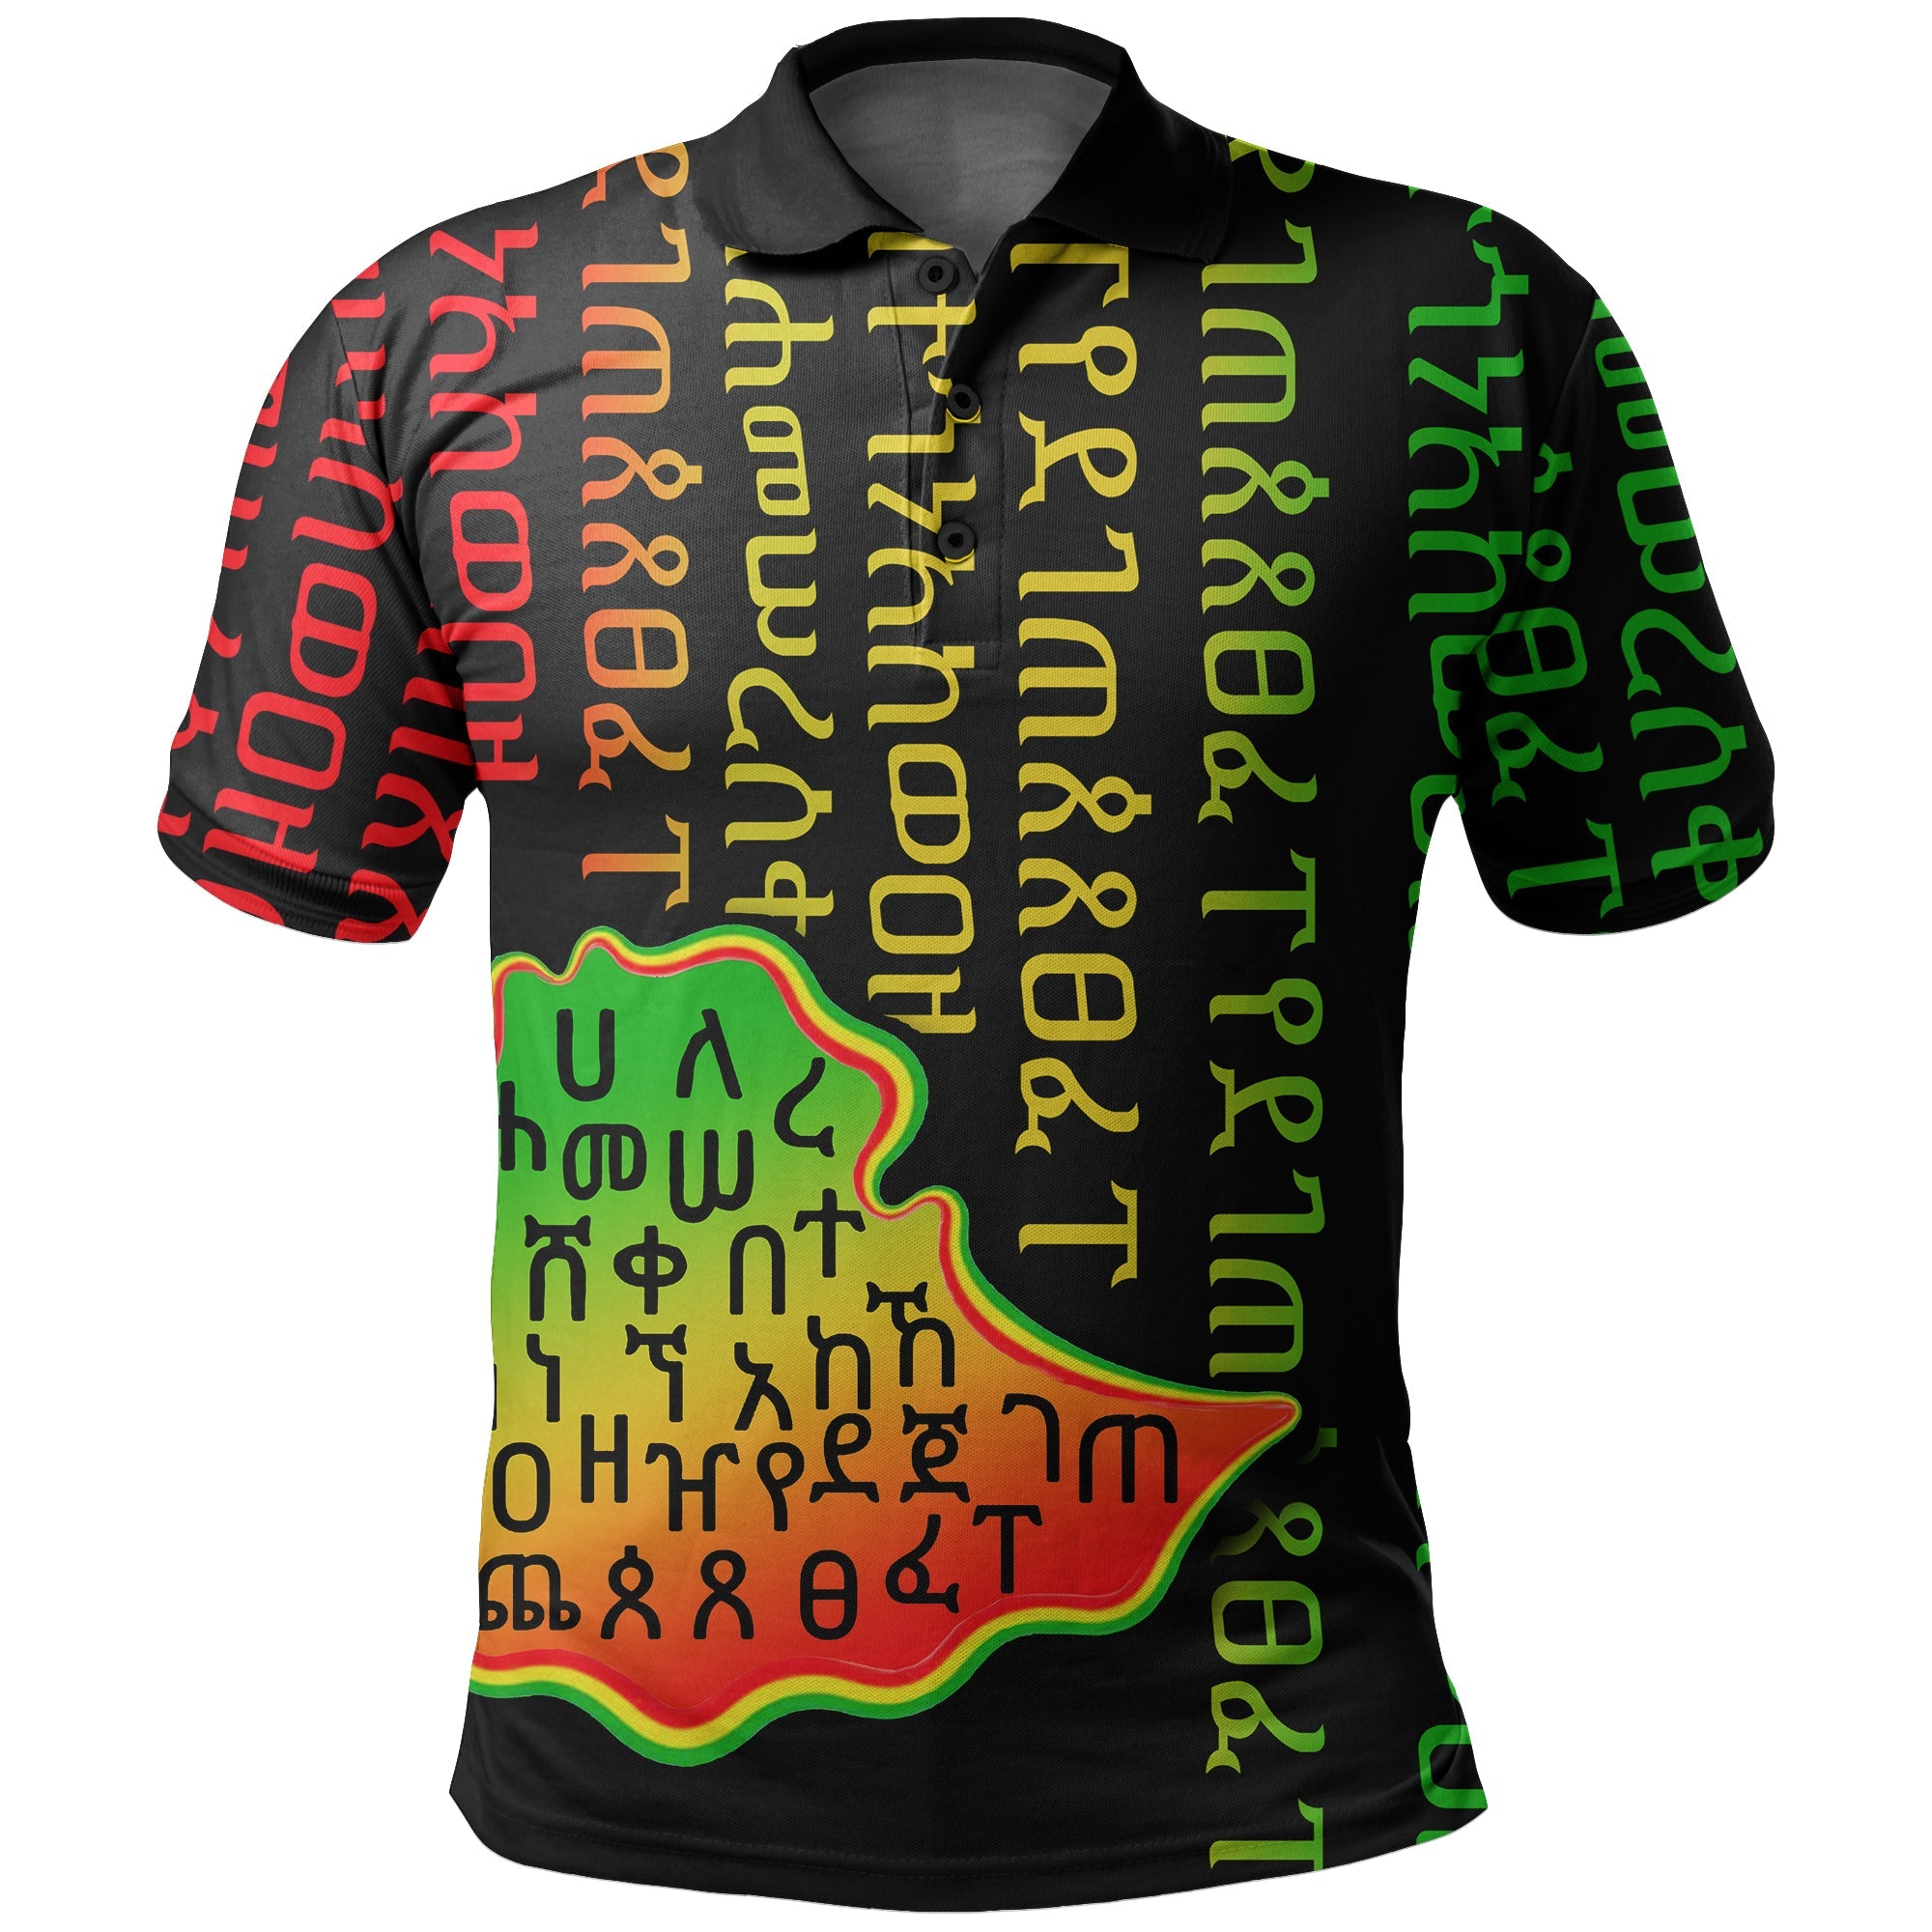 ethiopia-polo-shirt-ethiopia-alphabet-patterns